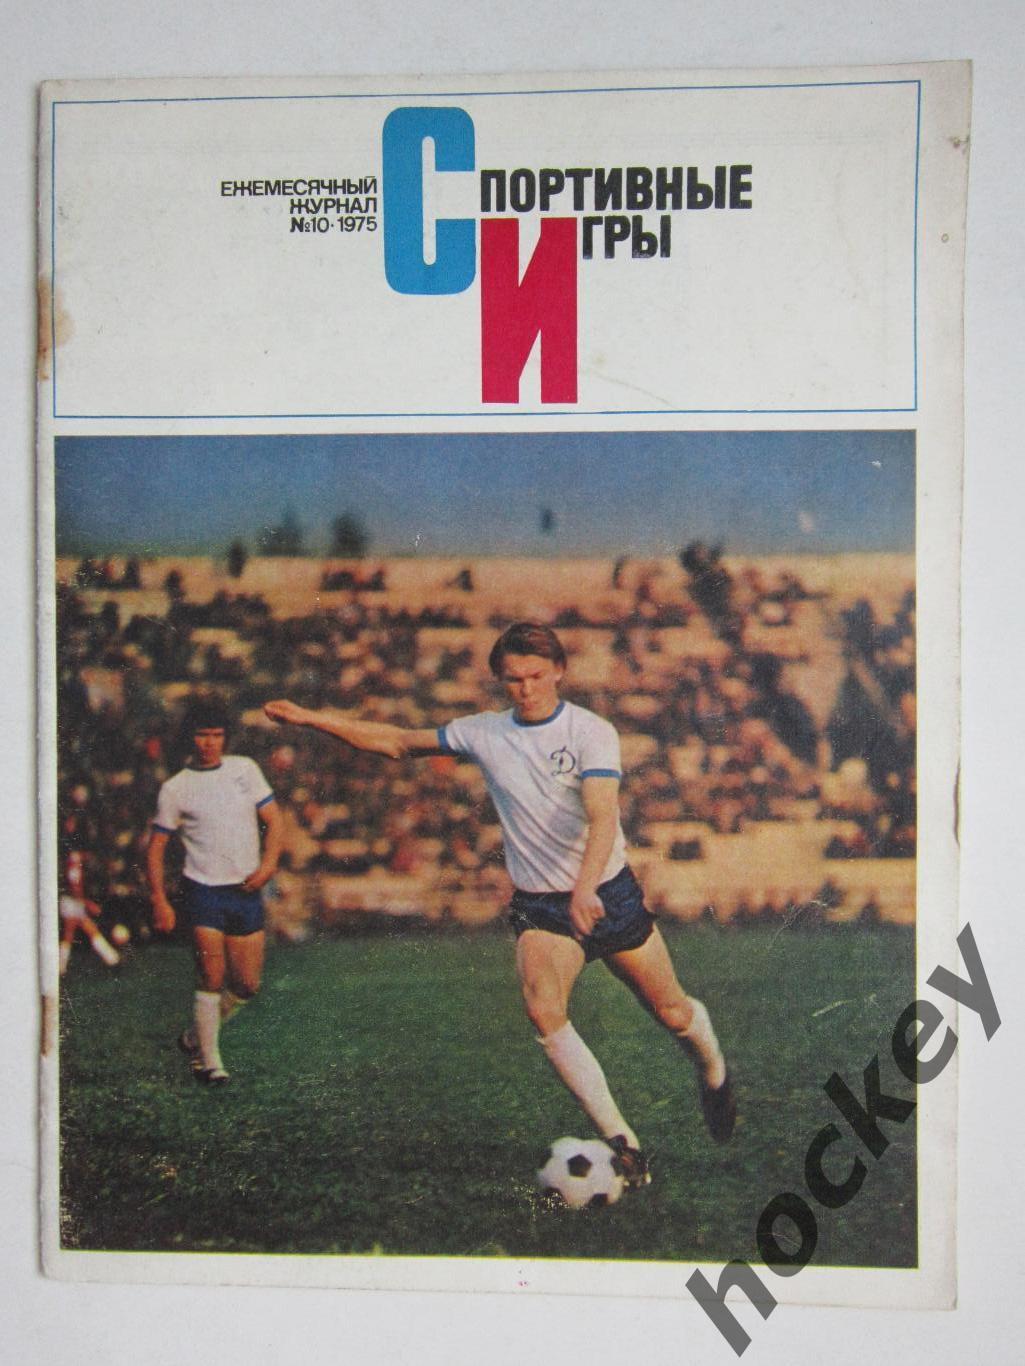 Журнал Спортивные игры № 10 (октябрь).1975